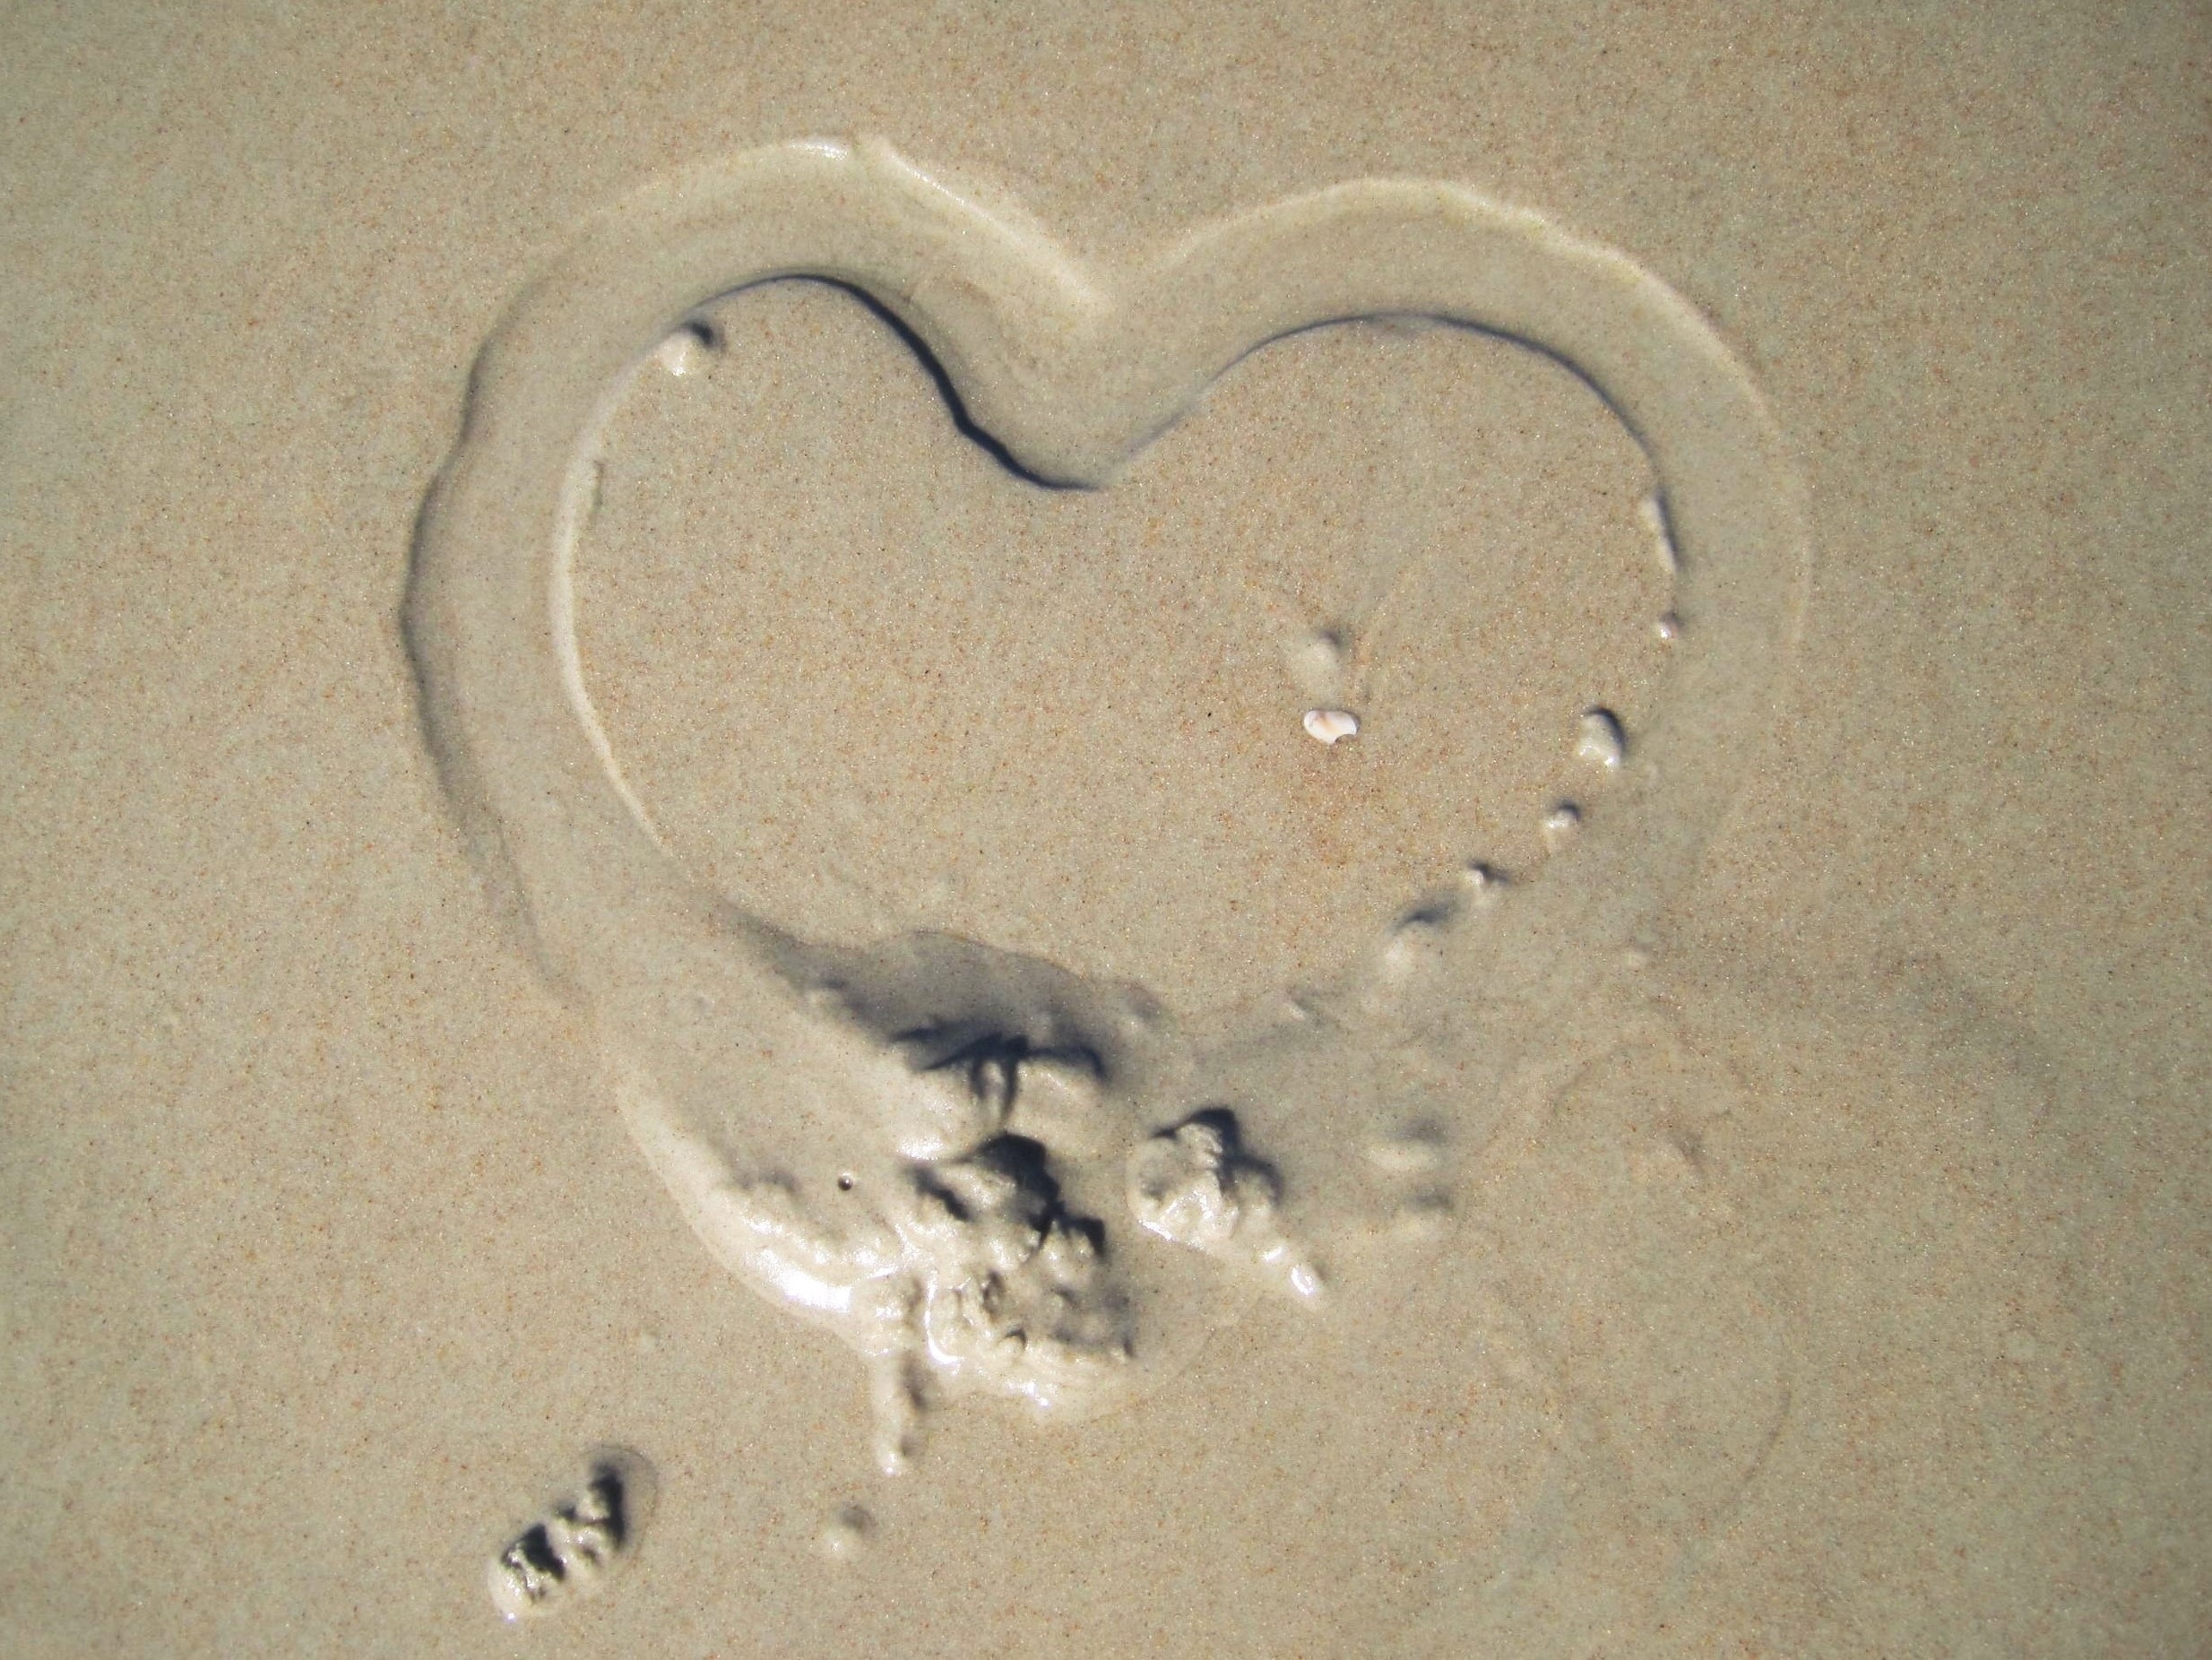 heart on wet sand